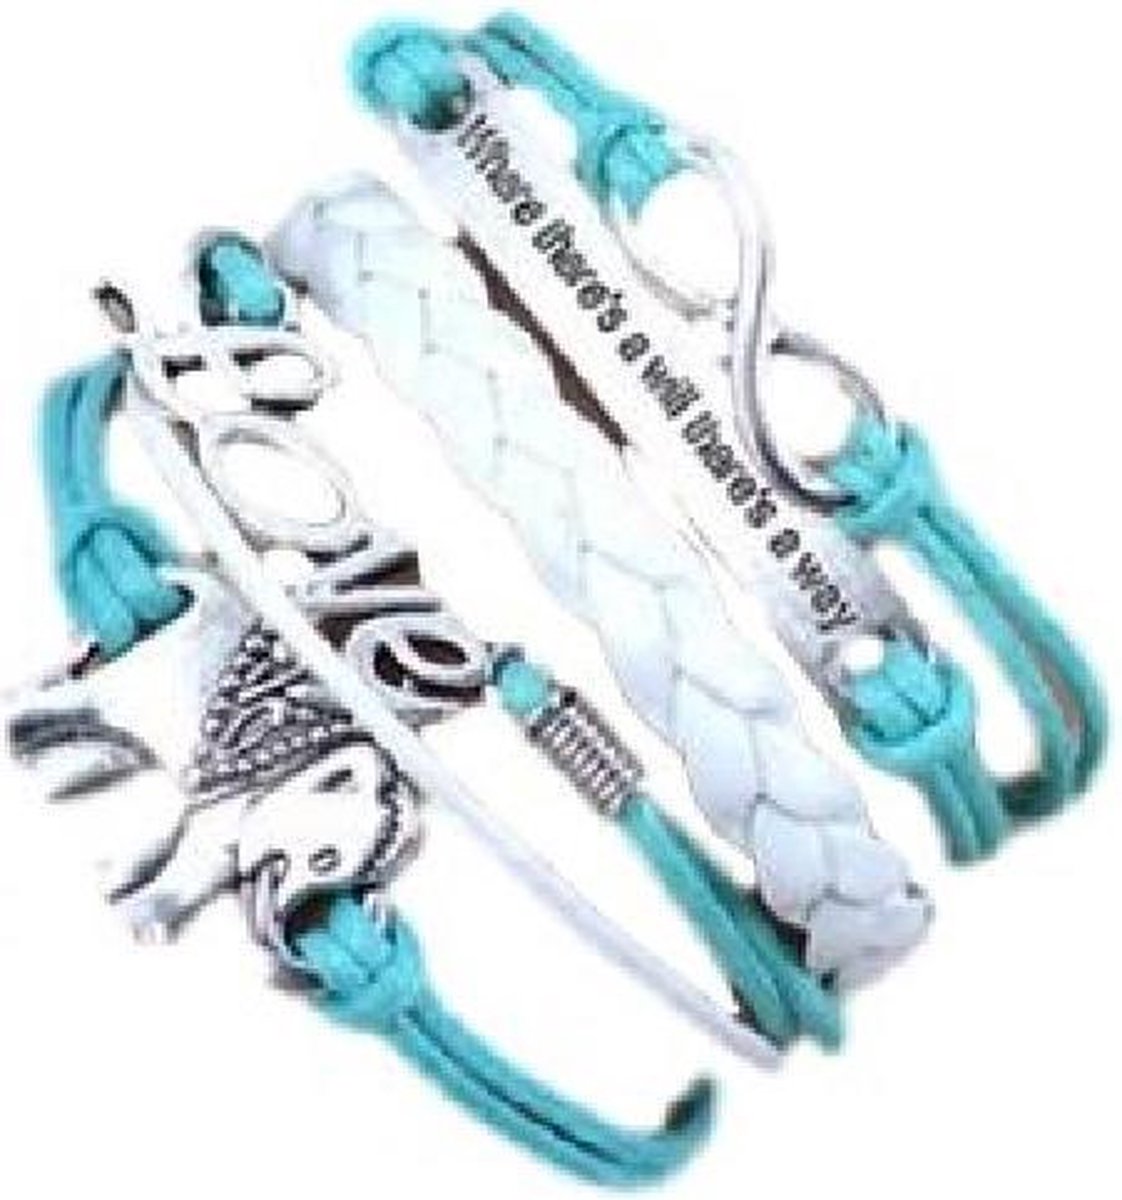 BY-ST6 meiden armband in de kleur lichtblauw/wit